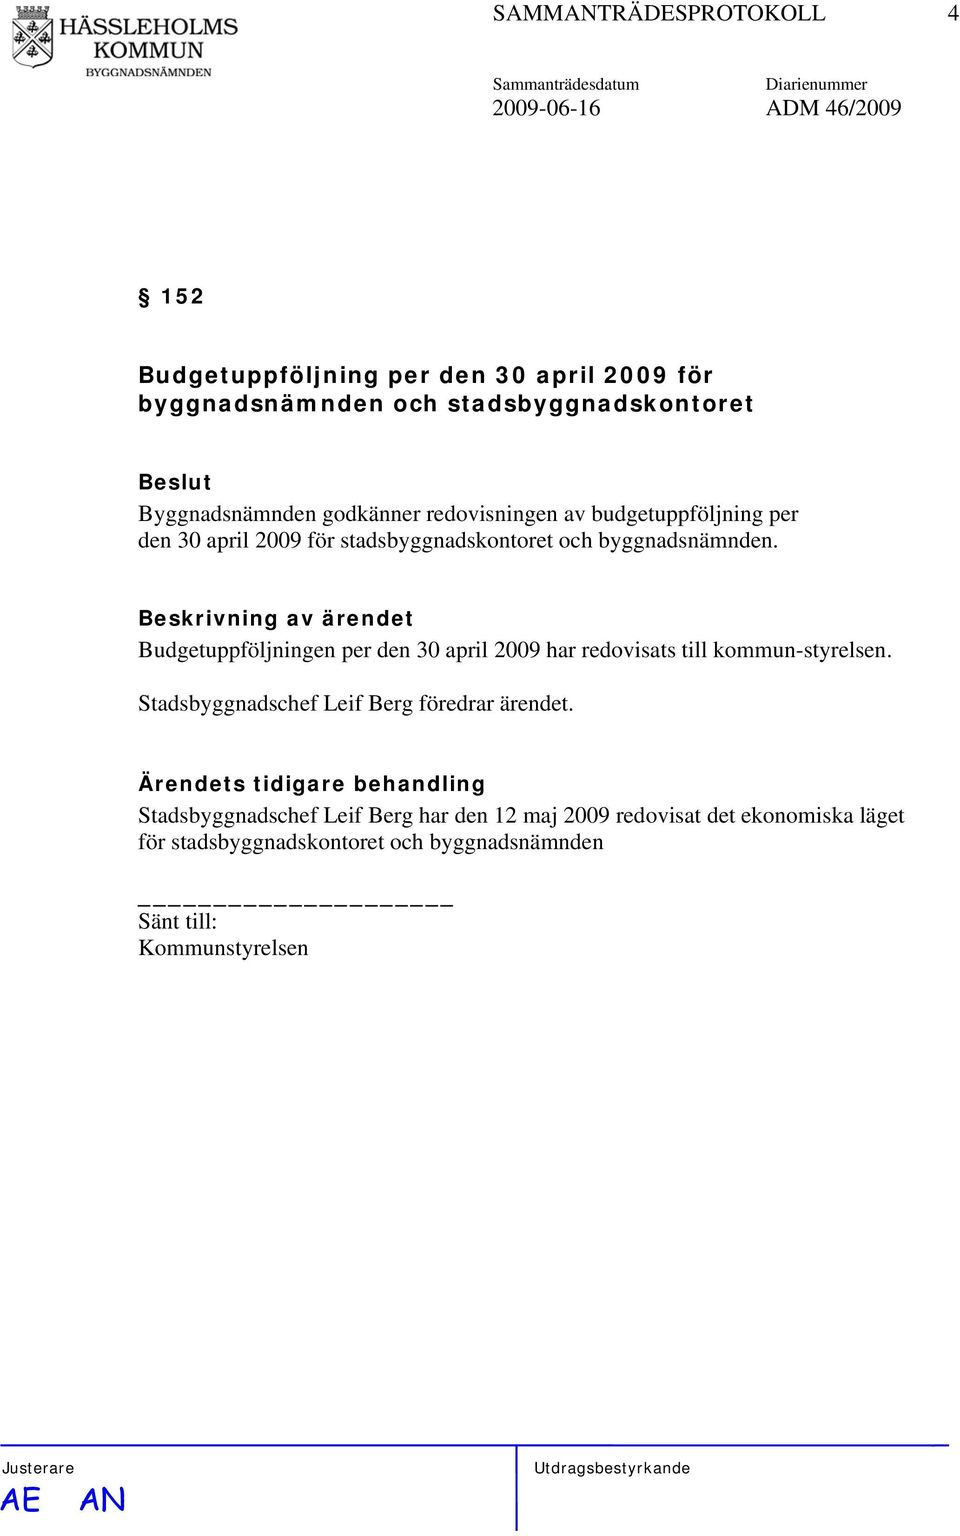 Budgetuppföljningen per den 30 april 2009 har redovisats till kommun-styrelsen. Stadsbyggnadschef Leif Berg föredrar ärendet.